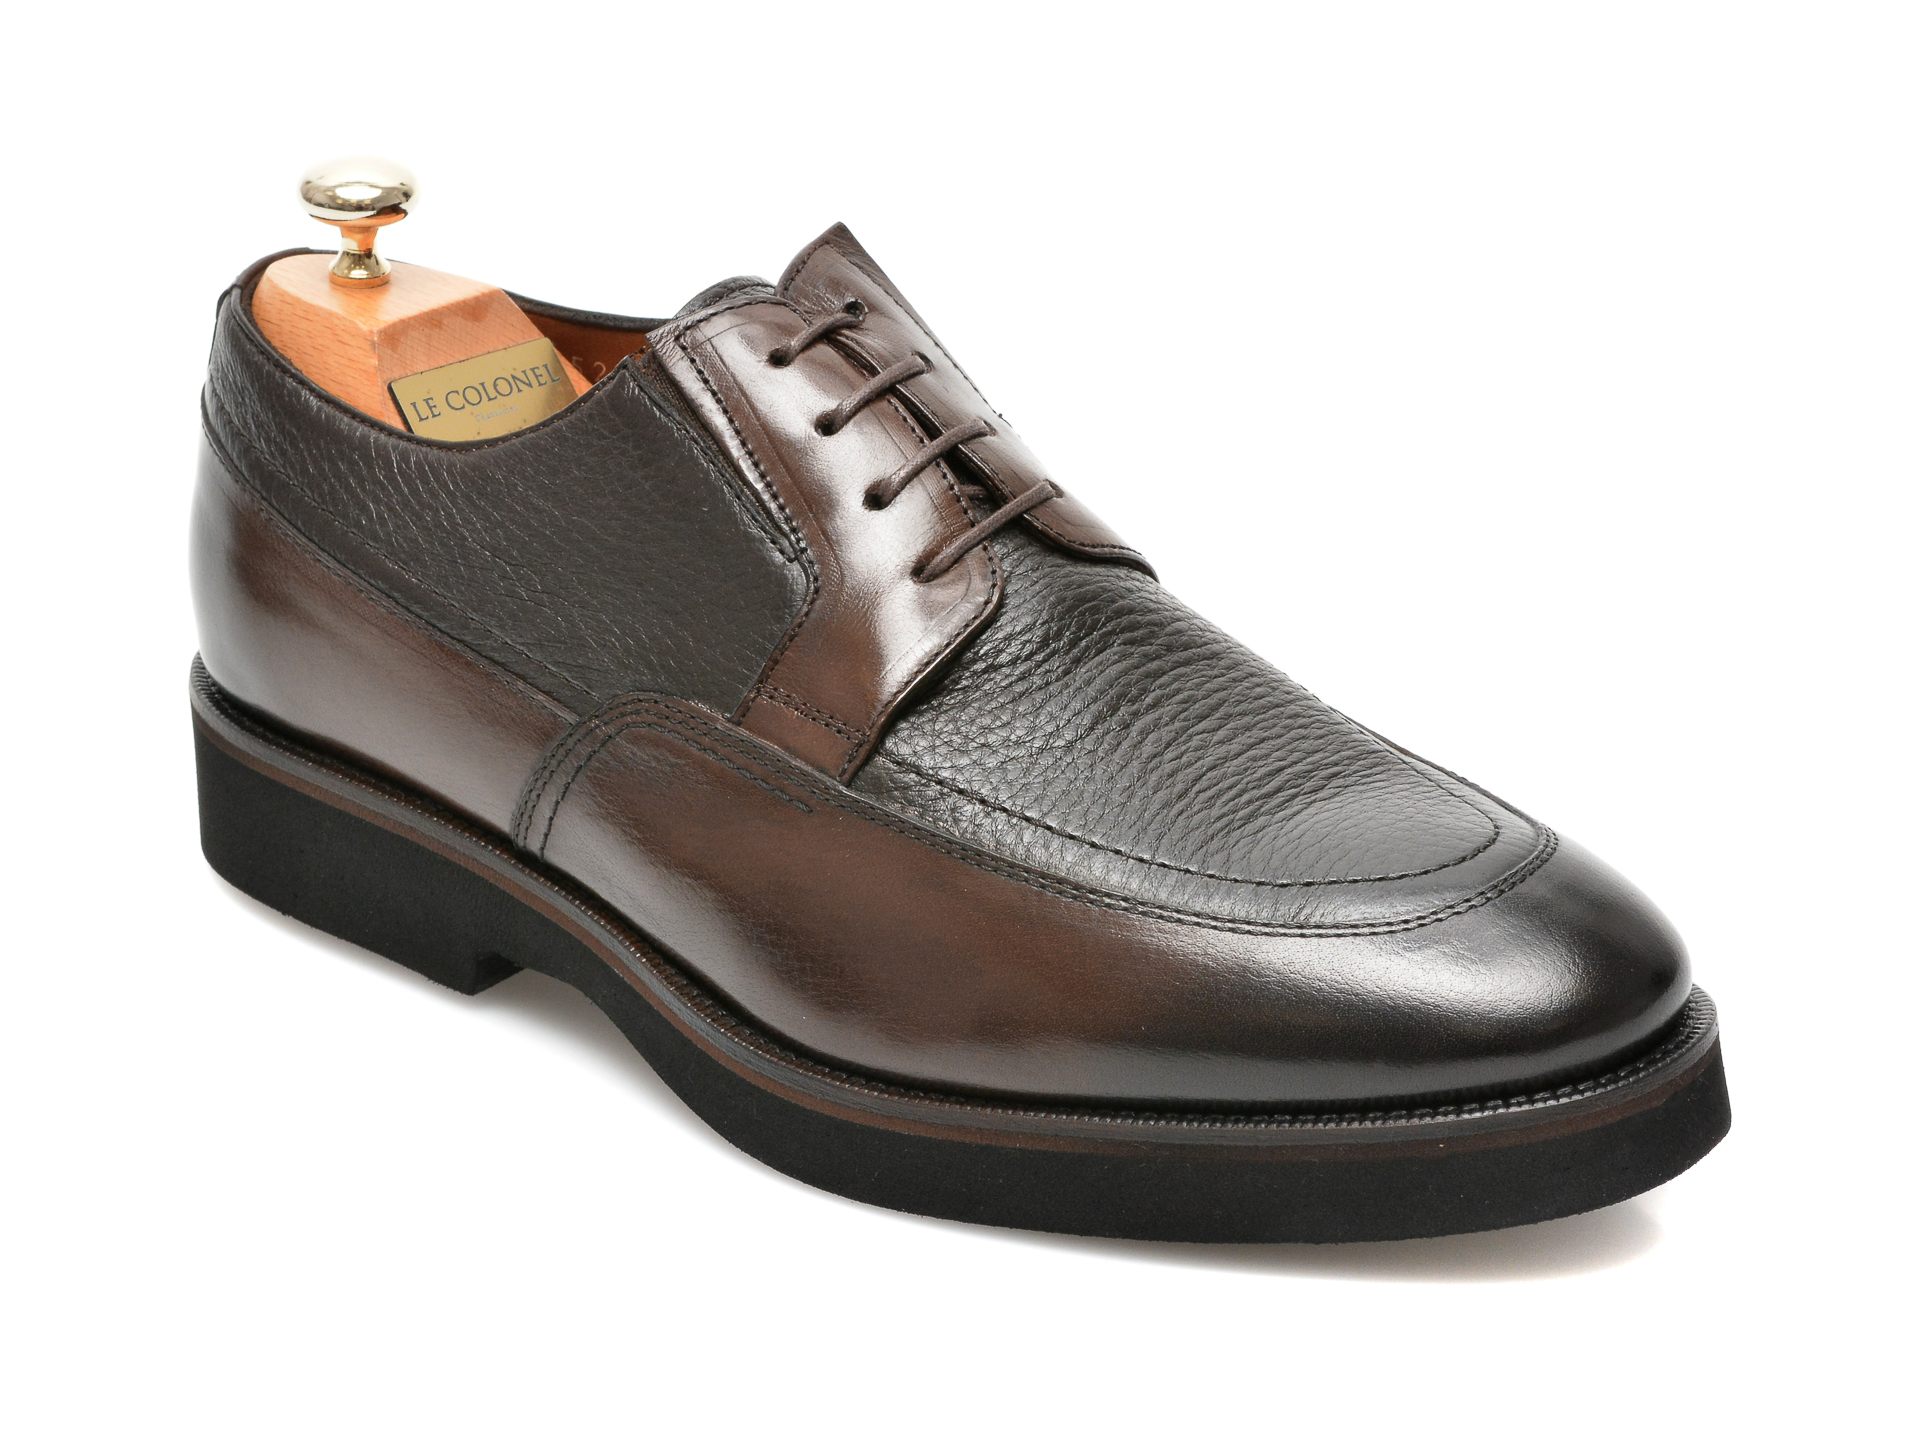 Pantofi LE COLONEL maro, 43452, din piele naturala imagine reduceri black friday 2021 Le Colonel